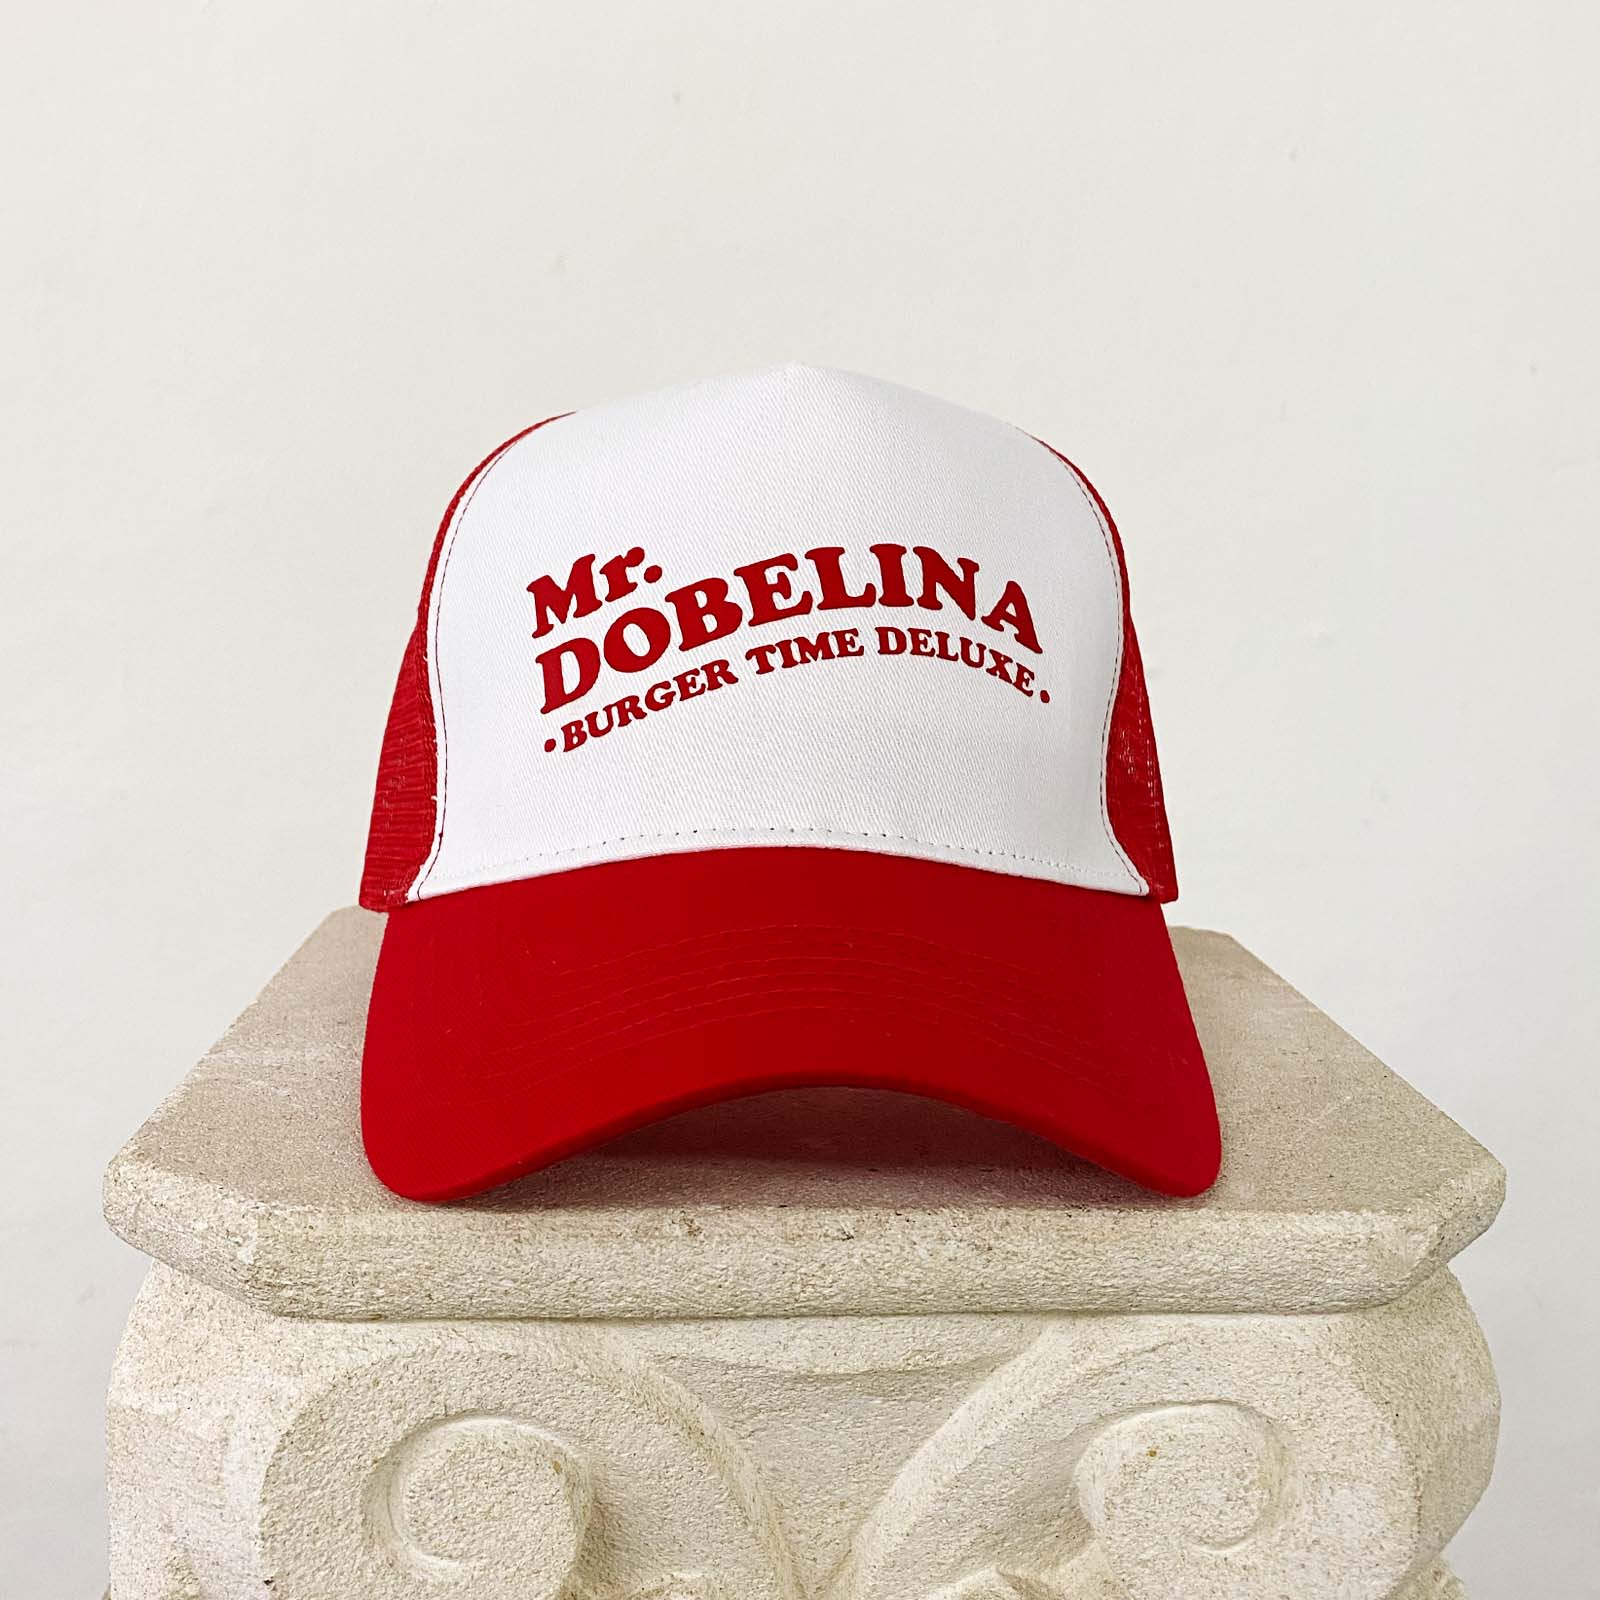 Mr.Dobelina Trucker Cap